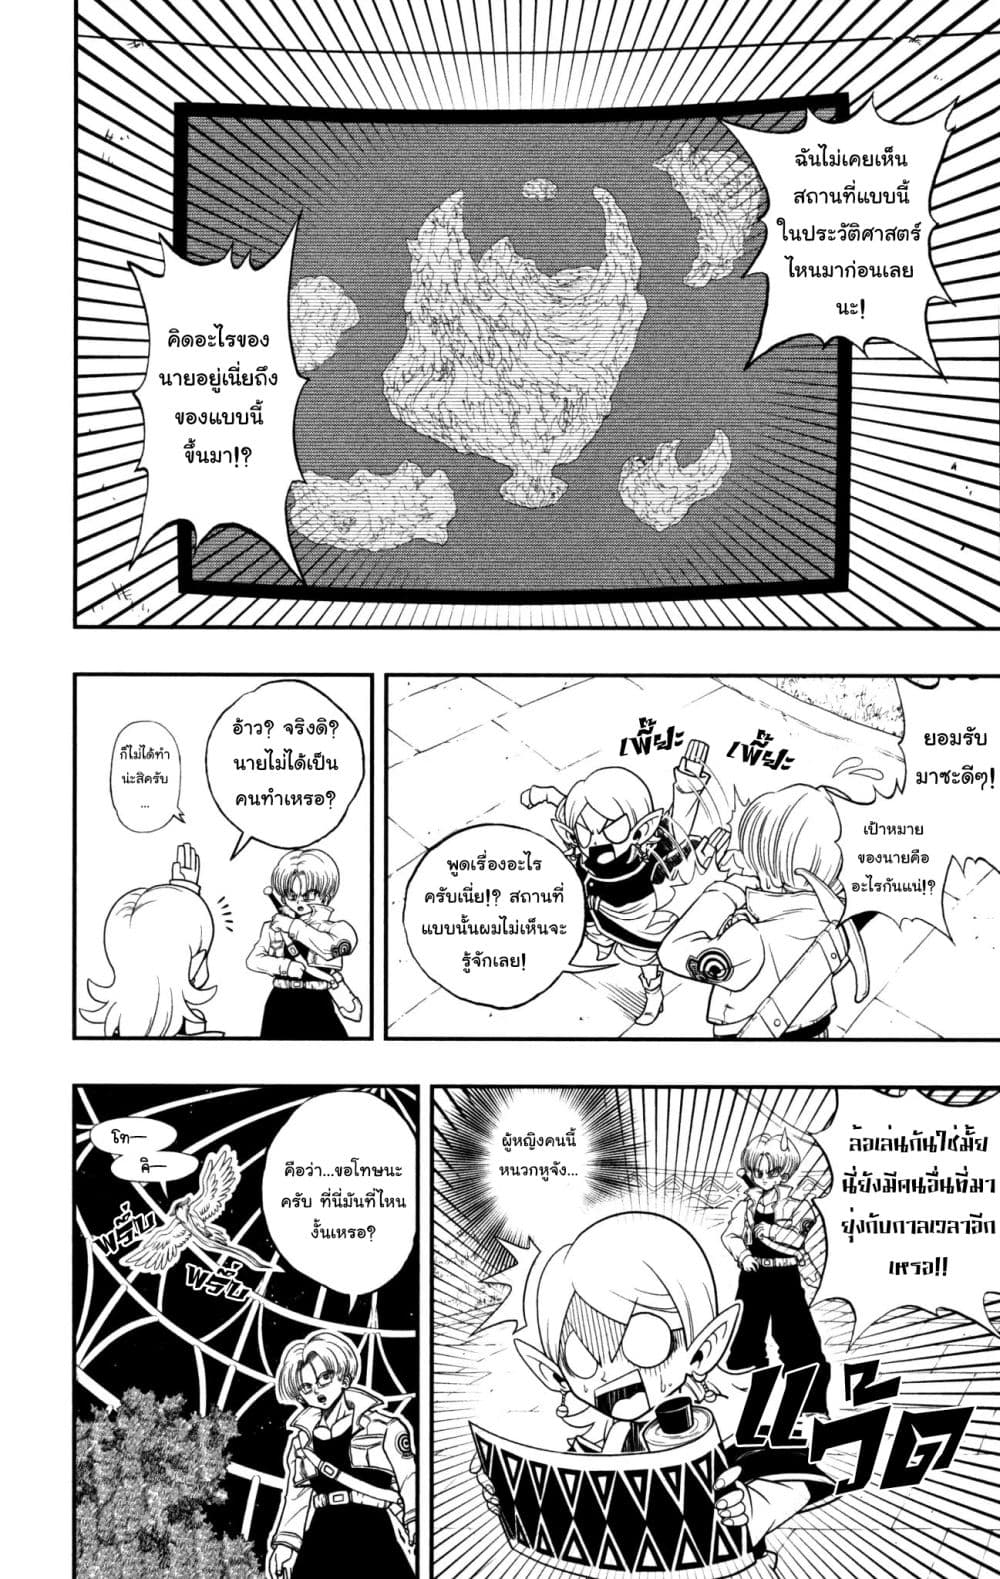 อ่าน Super Dragon Ball Heroes: Ankoku Makai Mission!